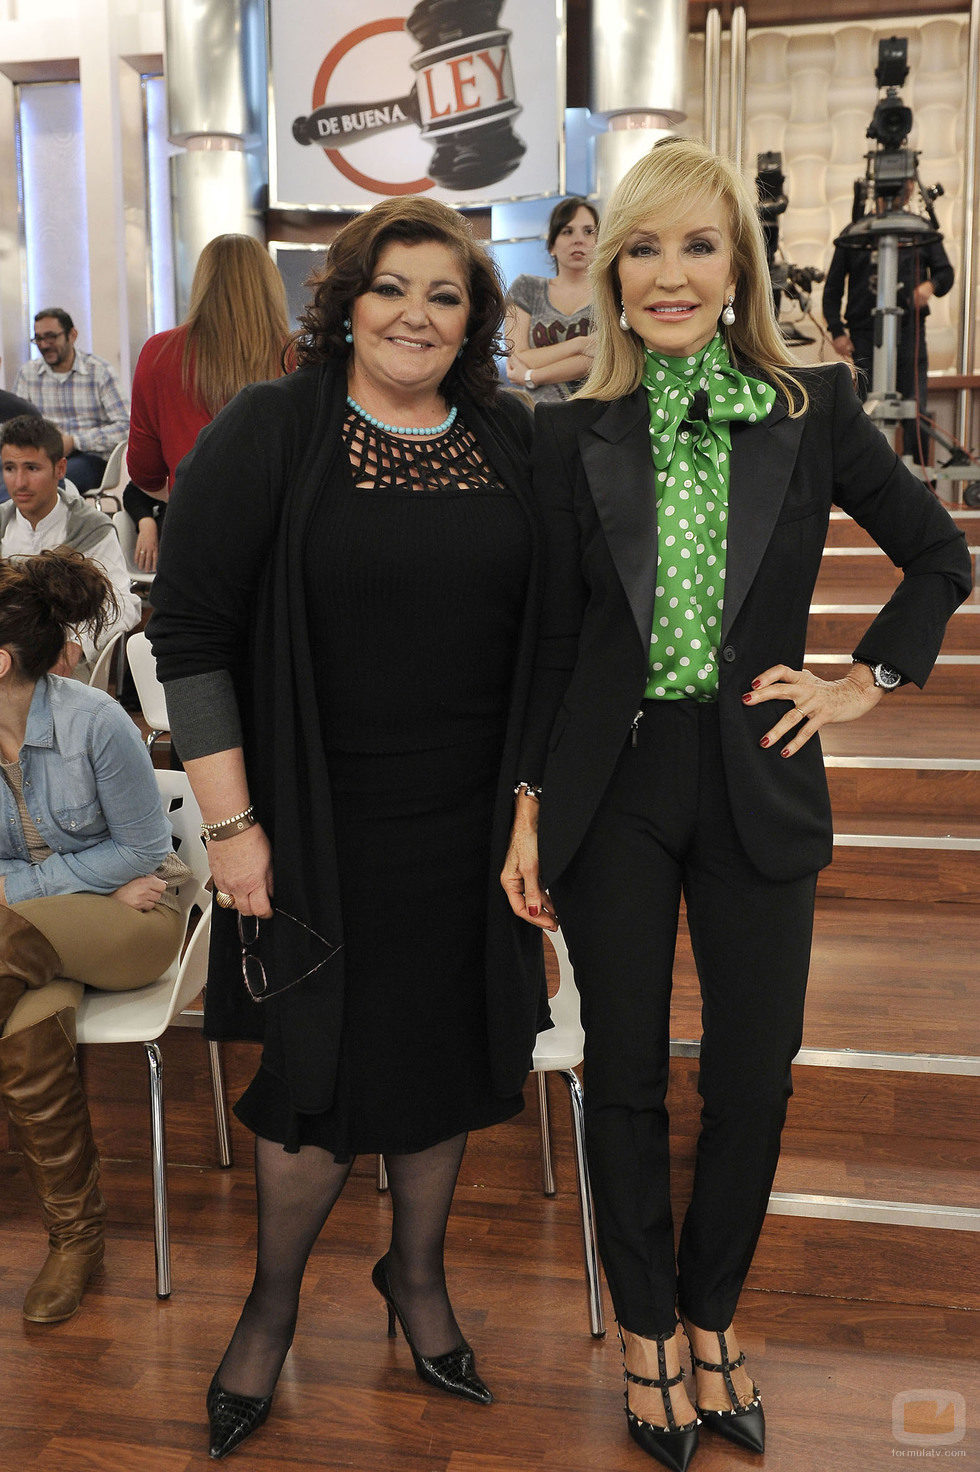 Charo Reina y Carmen Lomana en 'De buena ley'